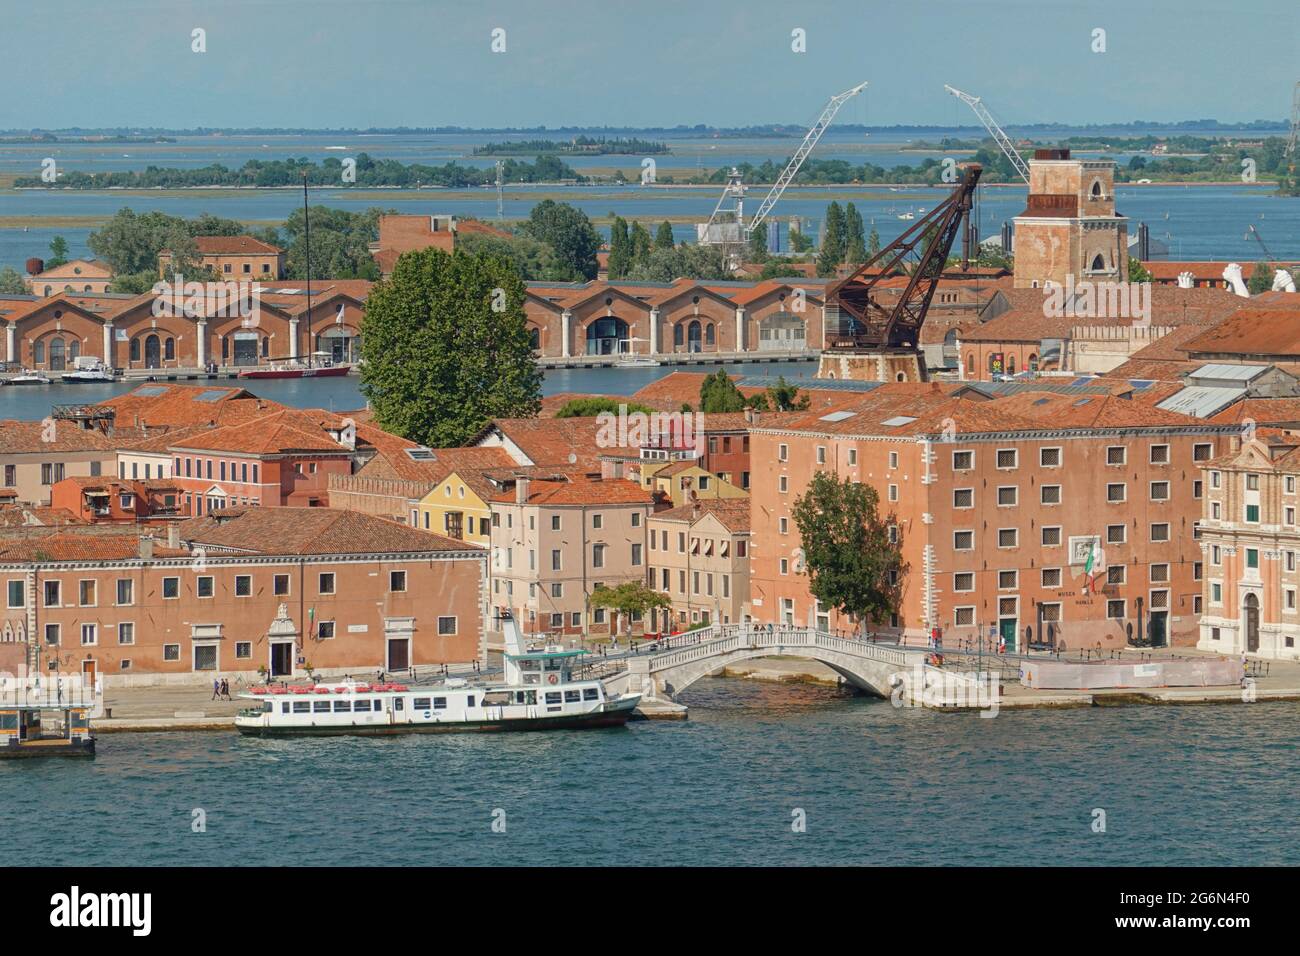 L'Arsenale Veneziano (Arsenale di Venezia) è un complesso di ex cantieri navali e armature raggruppate nella città di Venezia nel nord Foto Stock